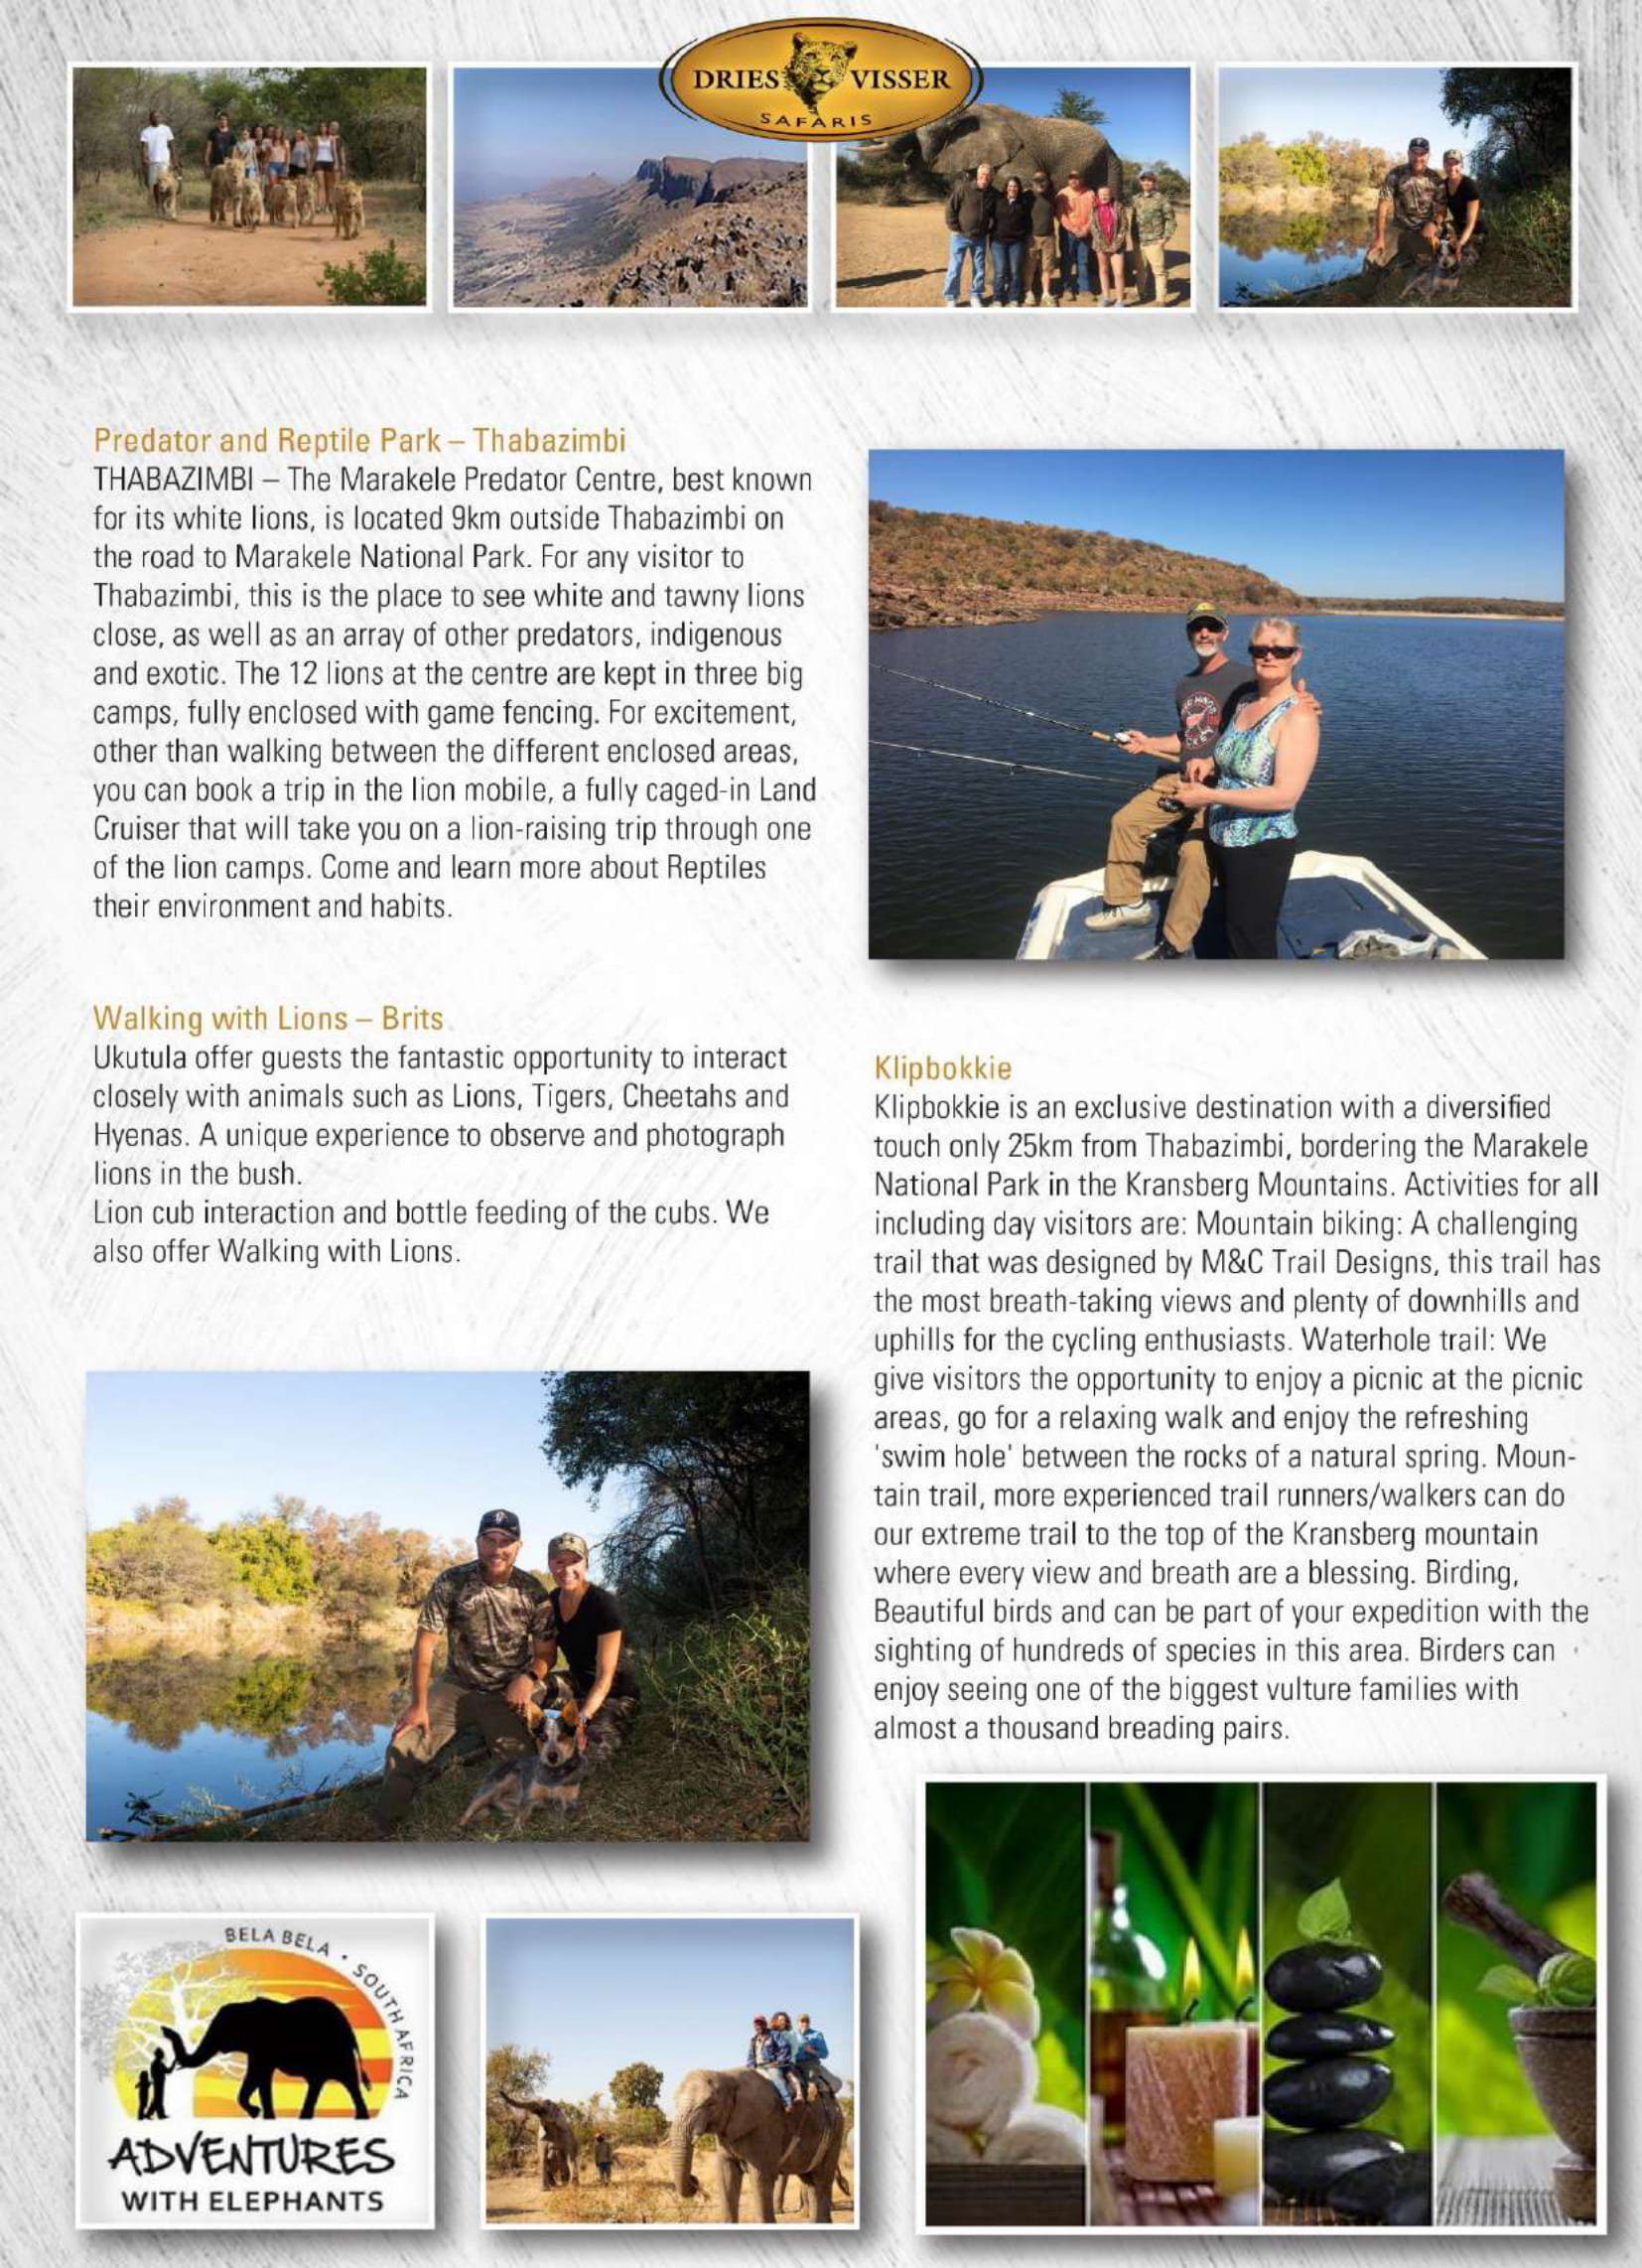 dries-visser-safaris-brochure-2021-19.jpg